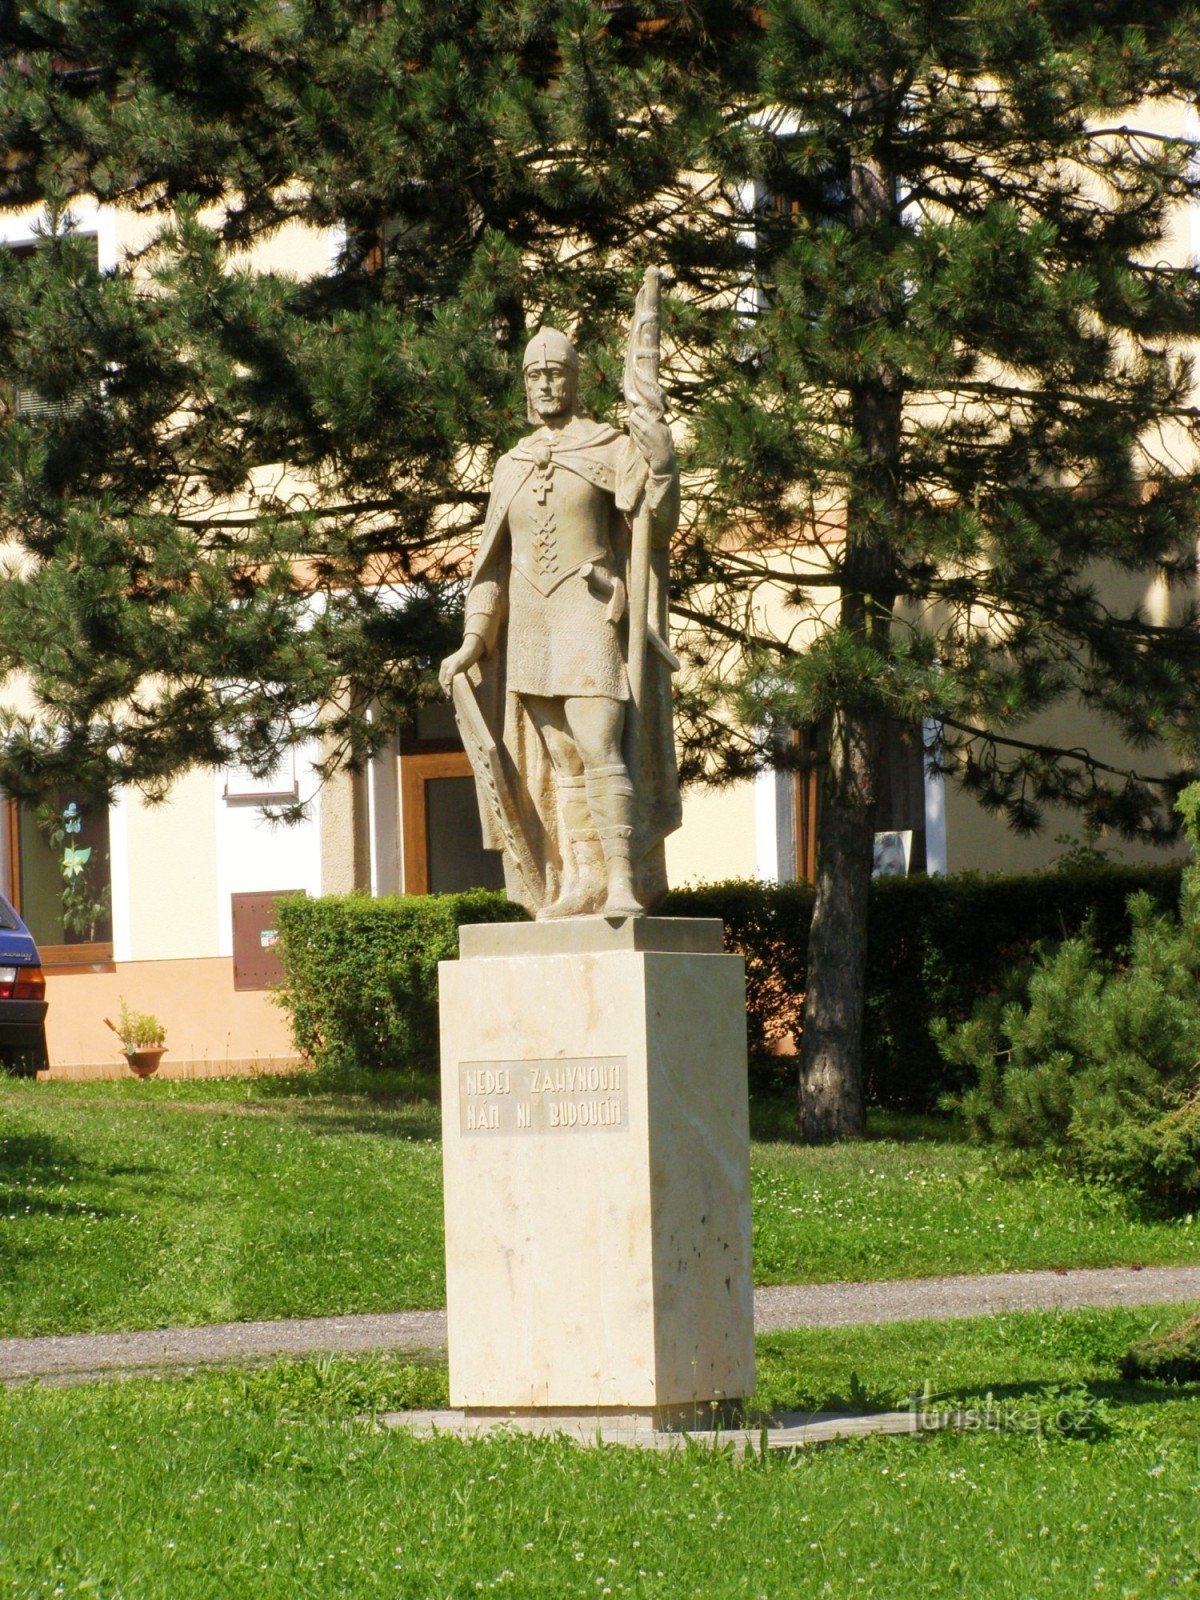 Mlázovice - náměstí Na Trávníku, St. ヴァーツラフ